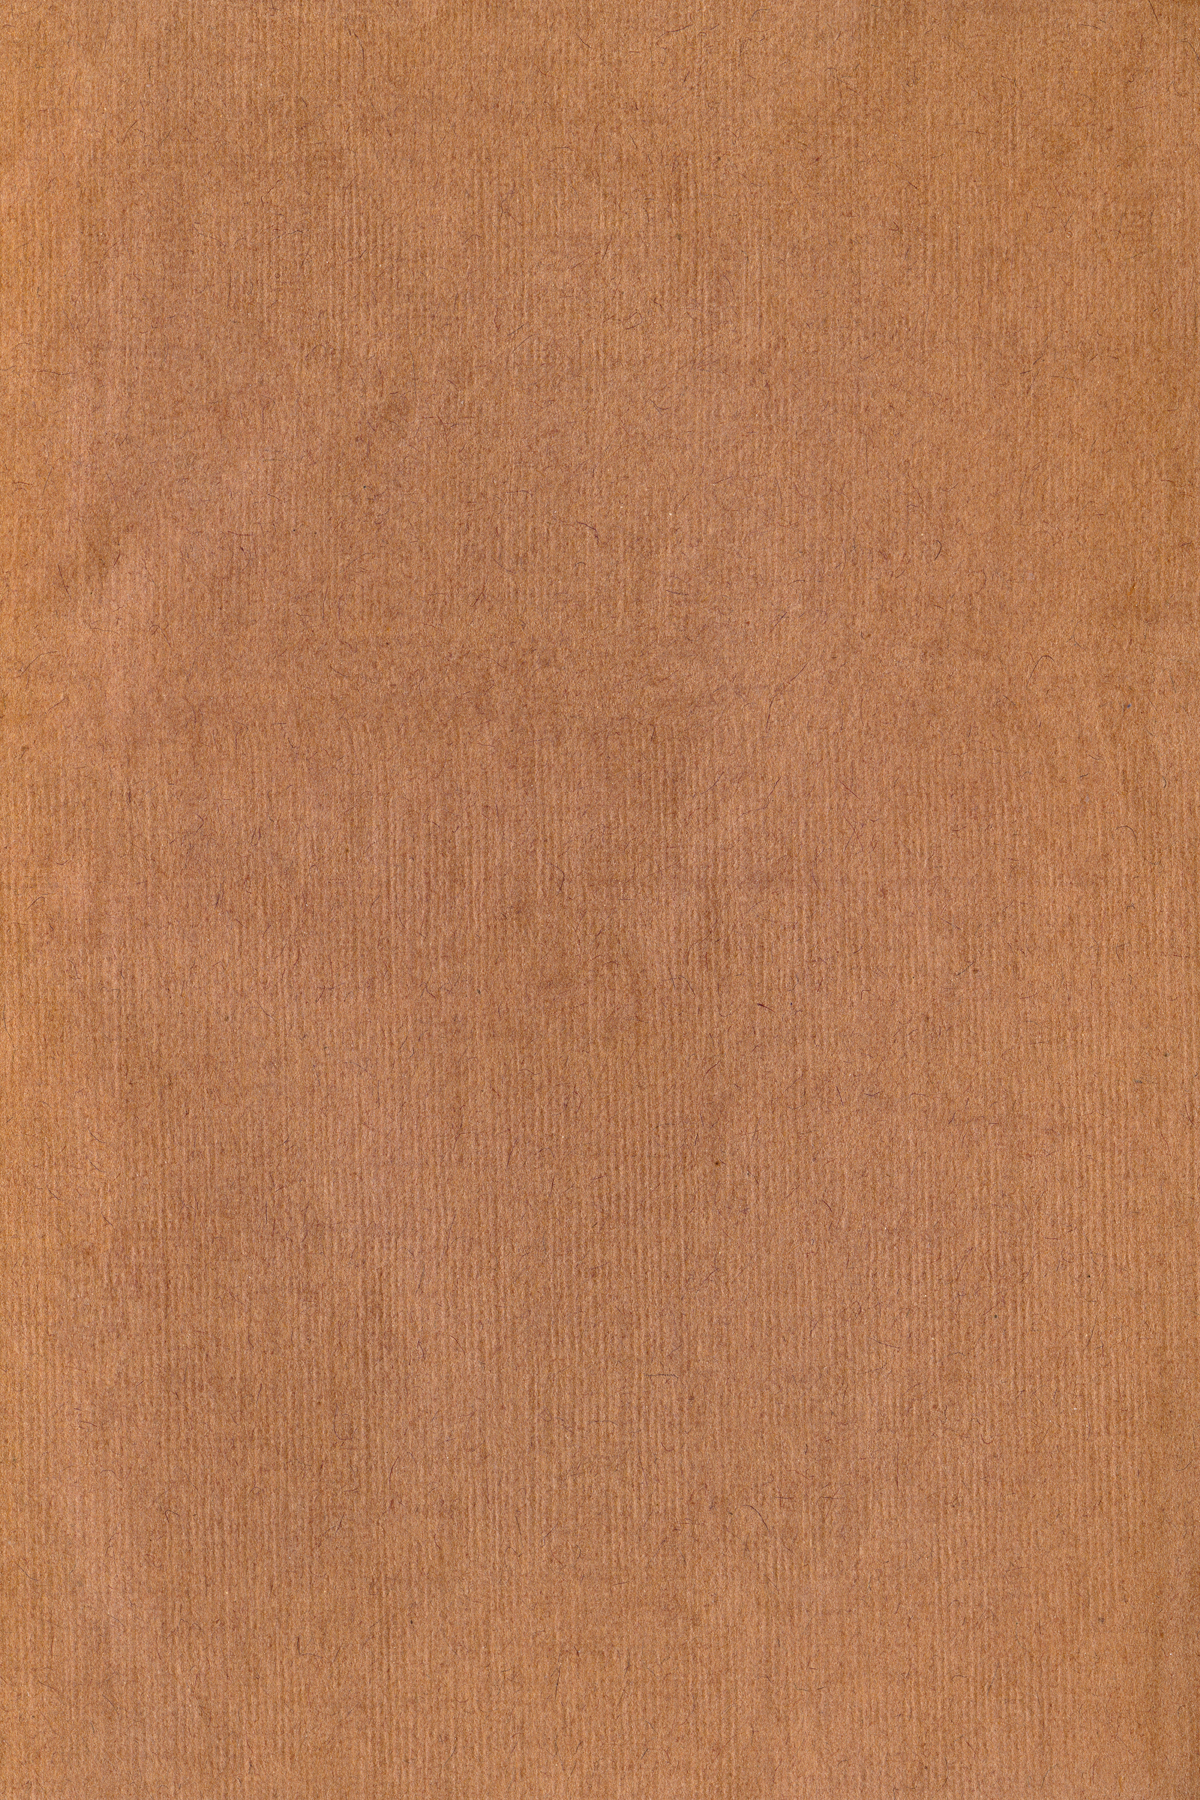 Paper Texture - Brown Canvas, Parchment, Textured, Texture, Surface, HQ Photo